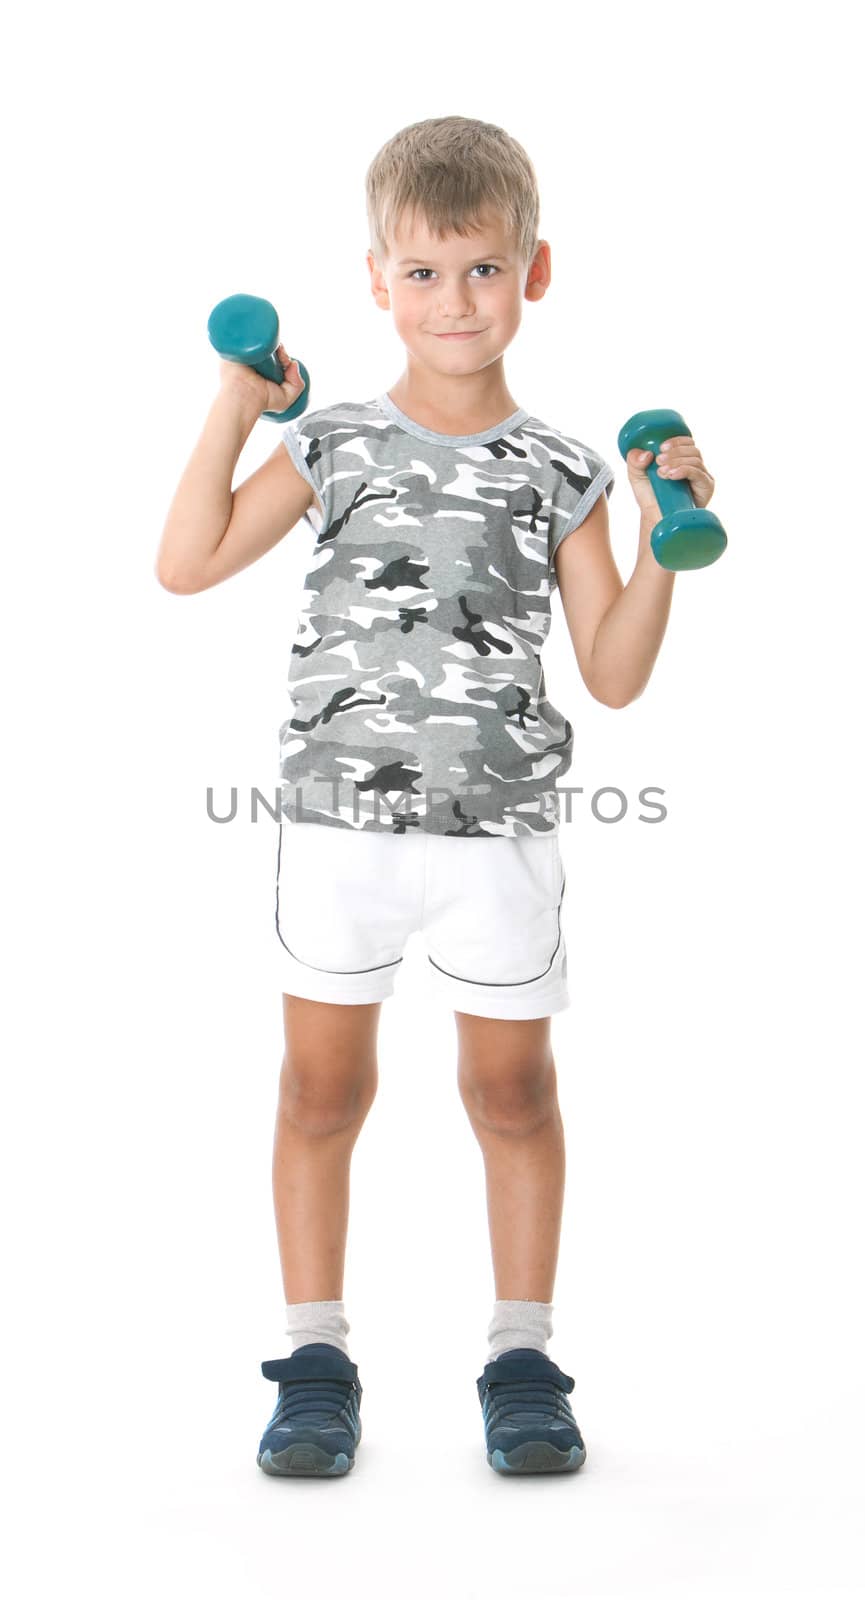 Boy holding dumbbells isolated on white background